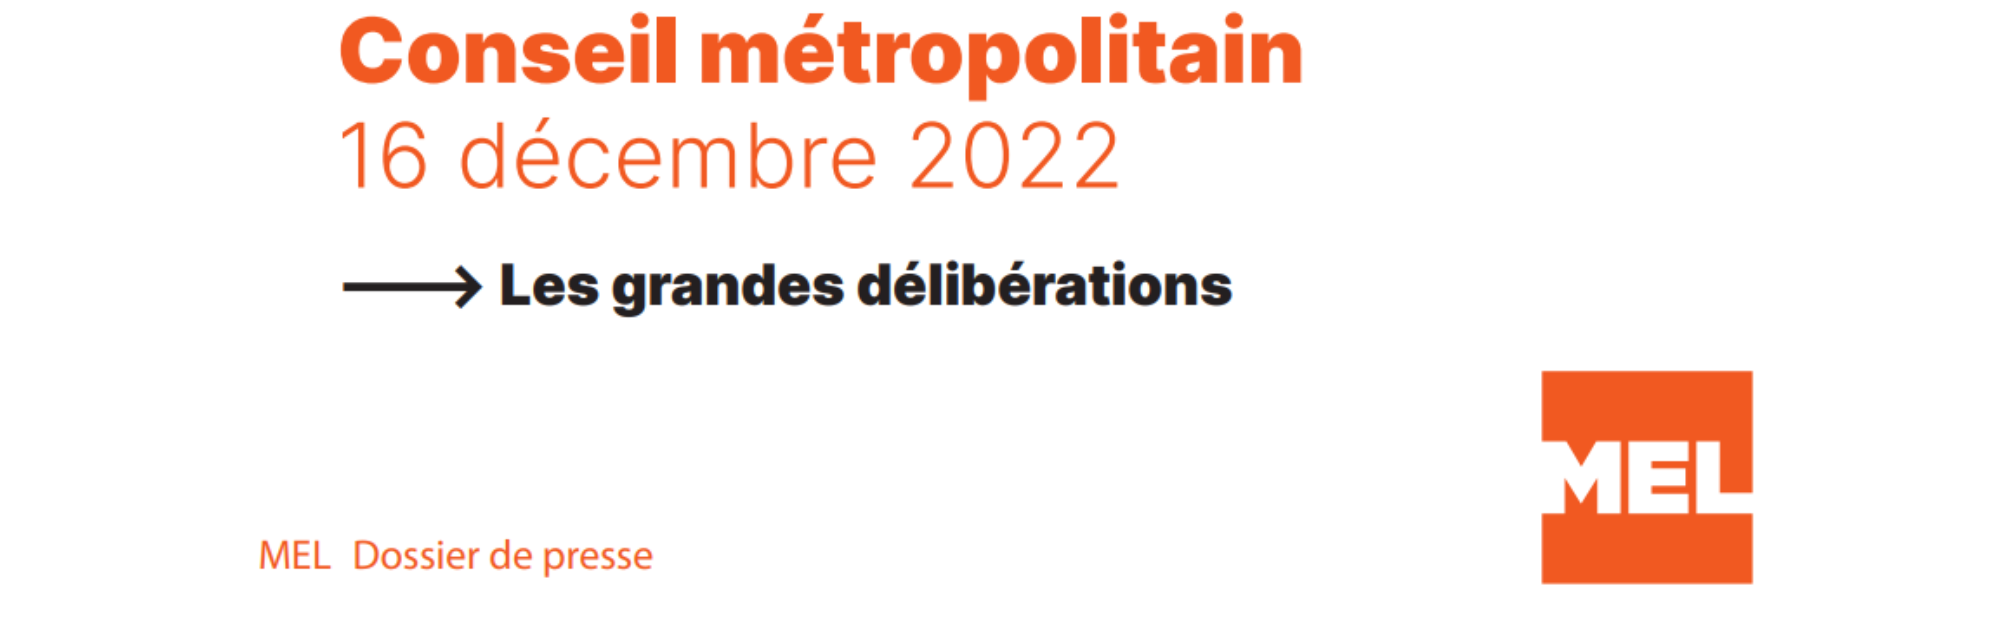 Conseil métropolitain du 16 décembre 2022